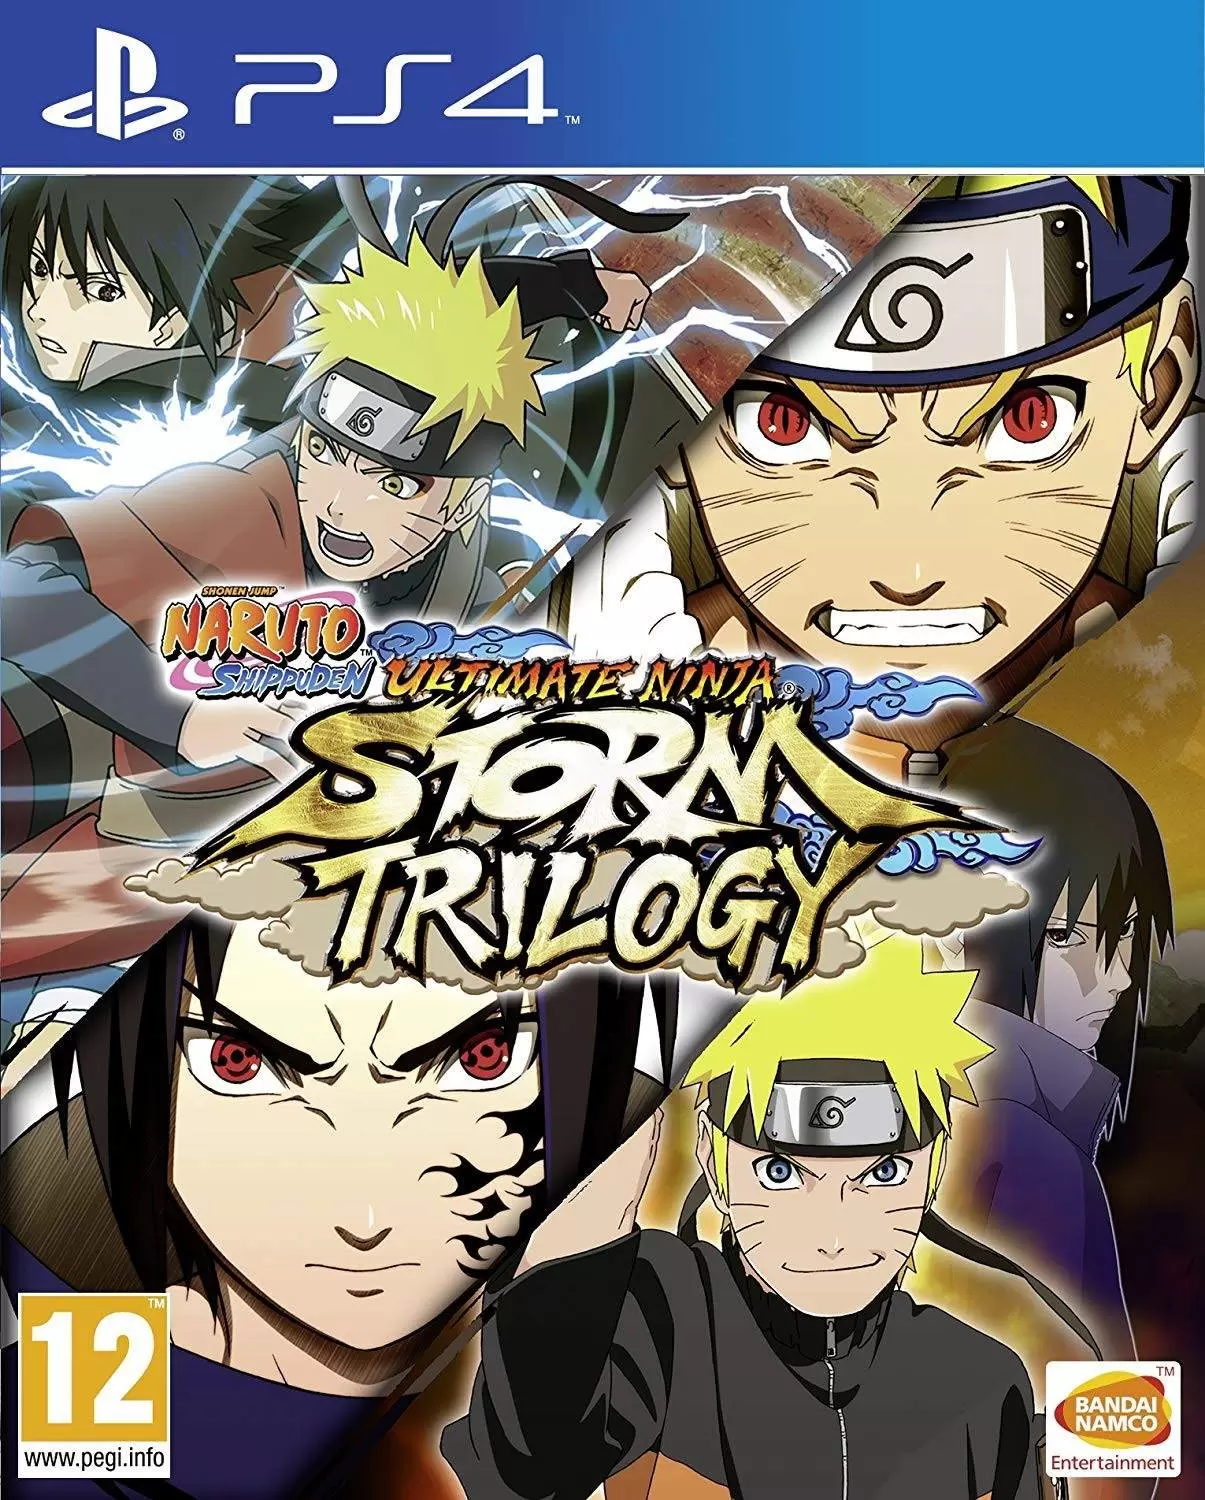 Jeux PS4 - Naruto Ultimate Ninja Storm Trilogy